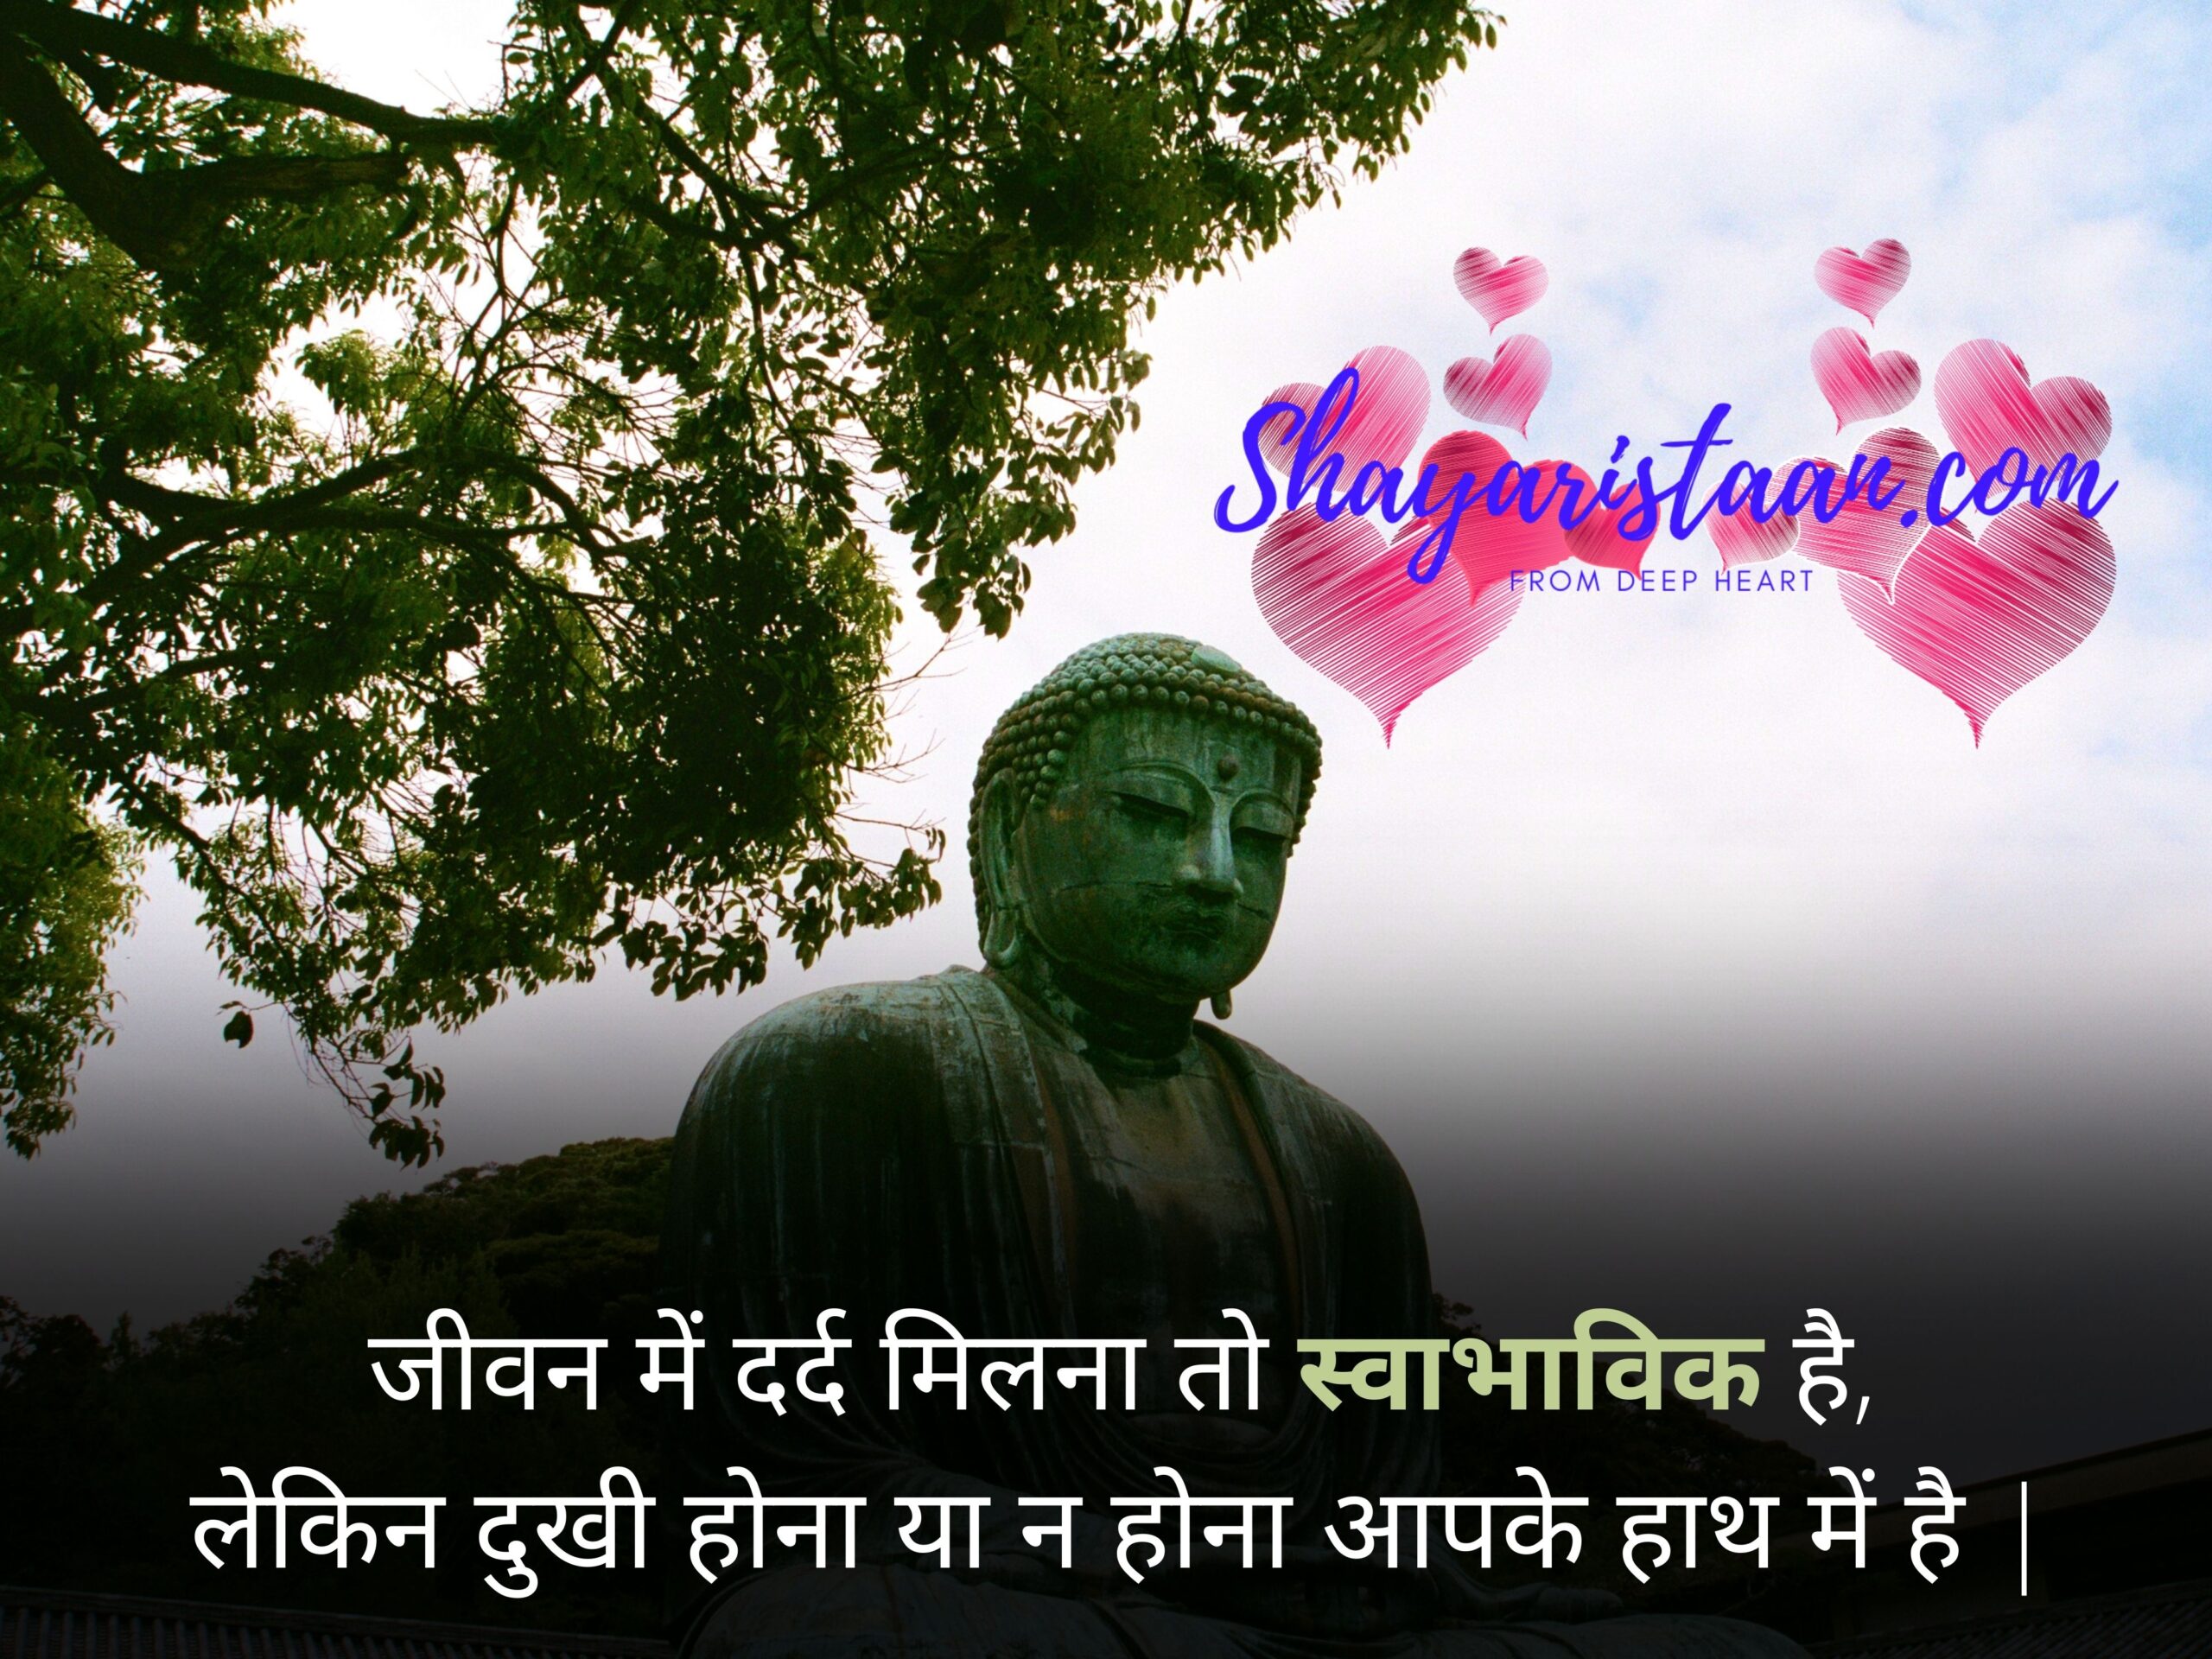  gautam buddha quotes in hindi | जीवन में दर्द मिलना तो स्वाभाविक है, लेकिन दुखी होना या न होना आपके हाथ में है